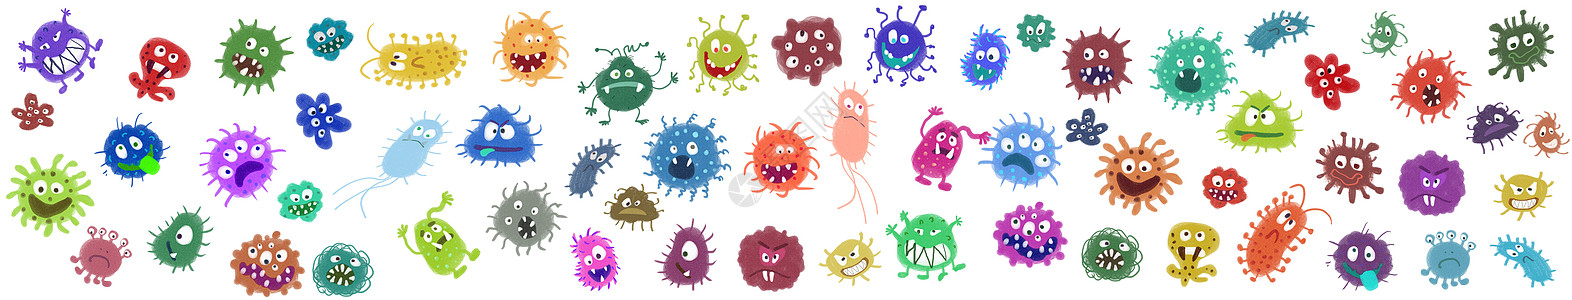 技术三细菌病毒元素插画